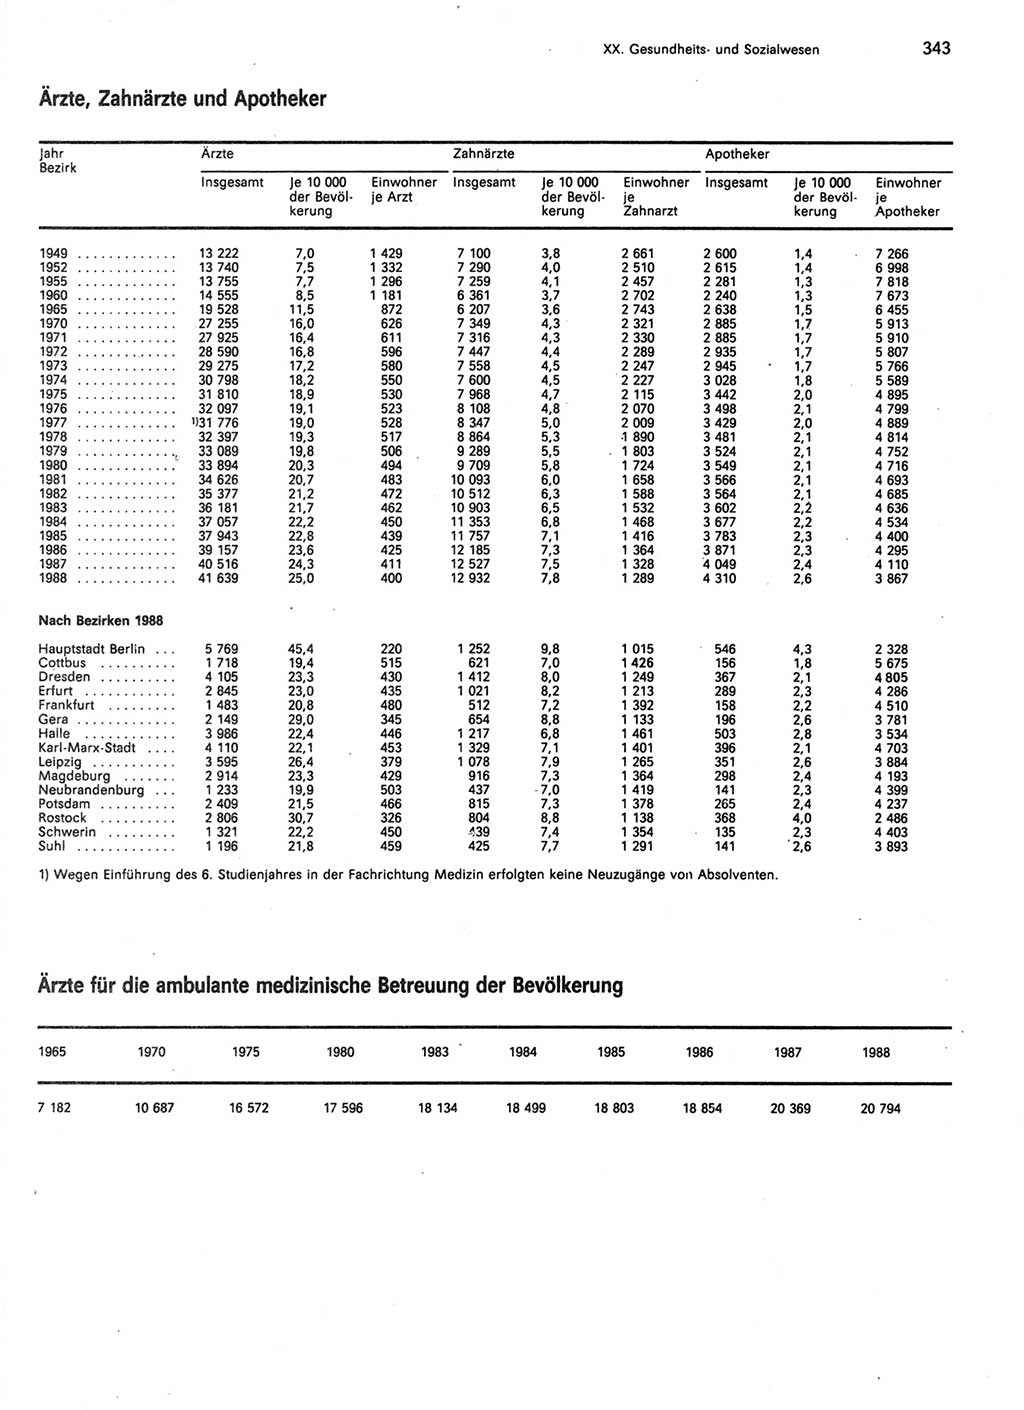 Statistisches Jahrbuch der Deutschen Demokratischen Republik (DDR) 1989, Seite 343 (Stat. Jb. DDR 1989, S. 343)